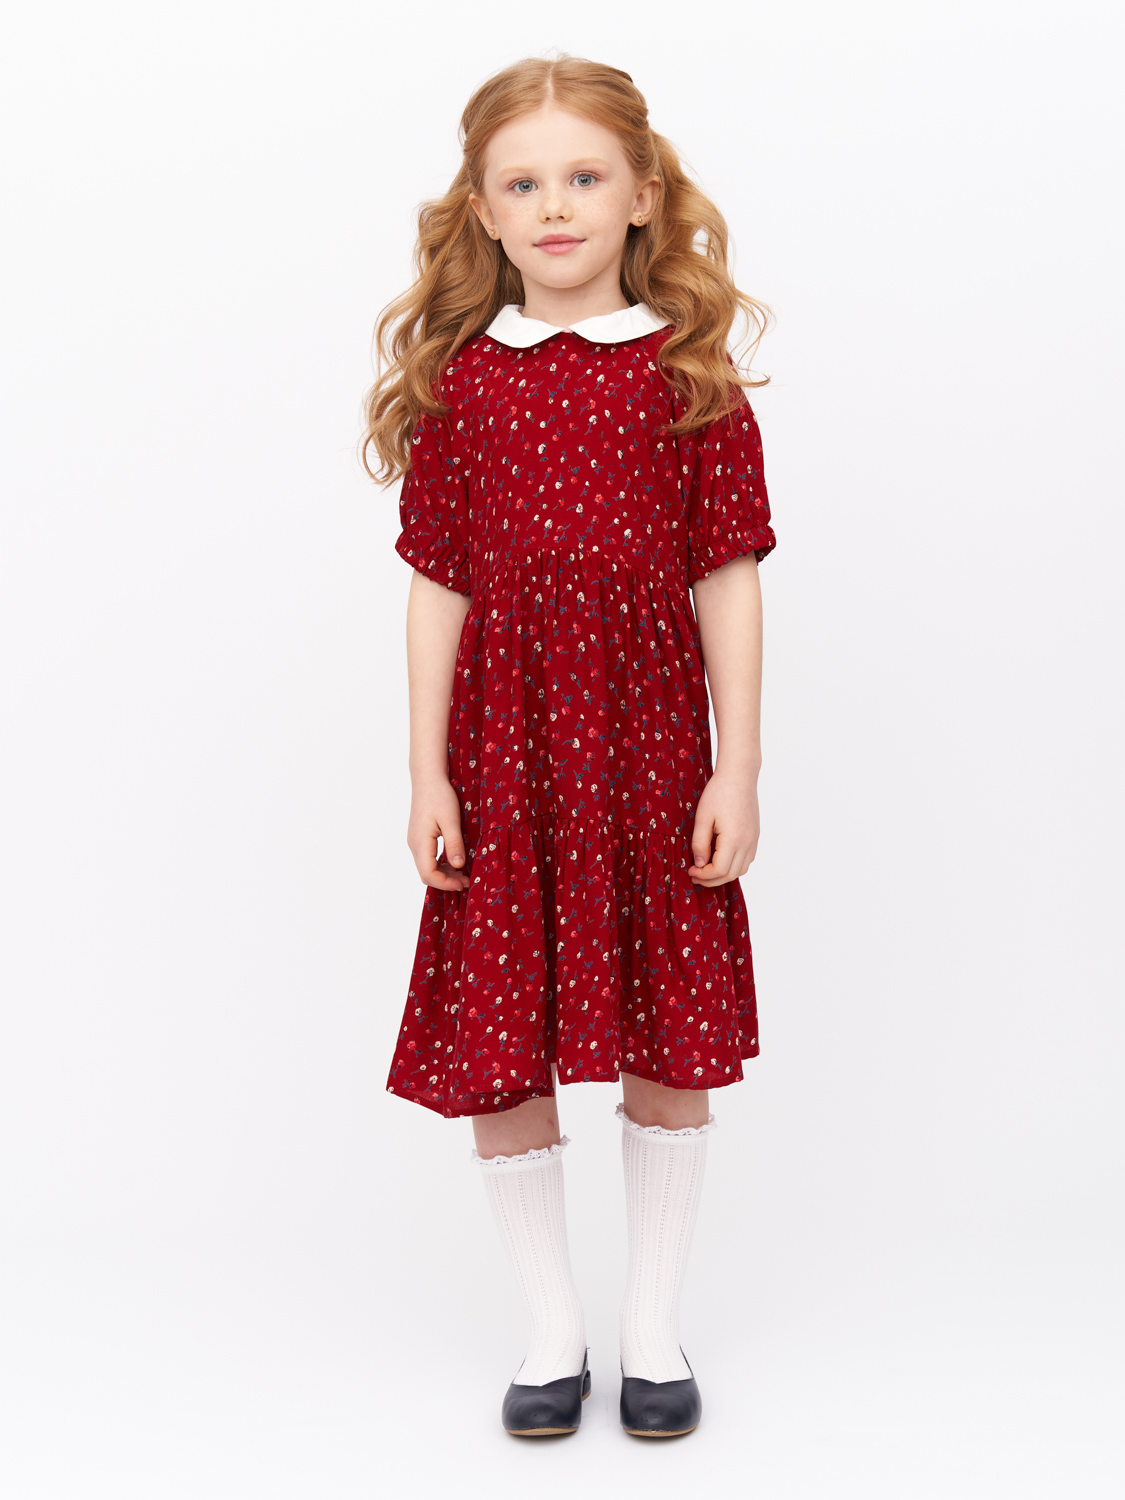 Платье детское Prime Baby PPP01804, бордовый, 122 платье с юбкой из фатина 8 9 бордовый loloclo